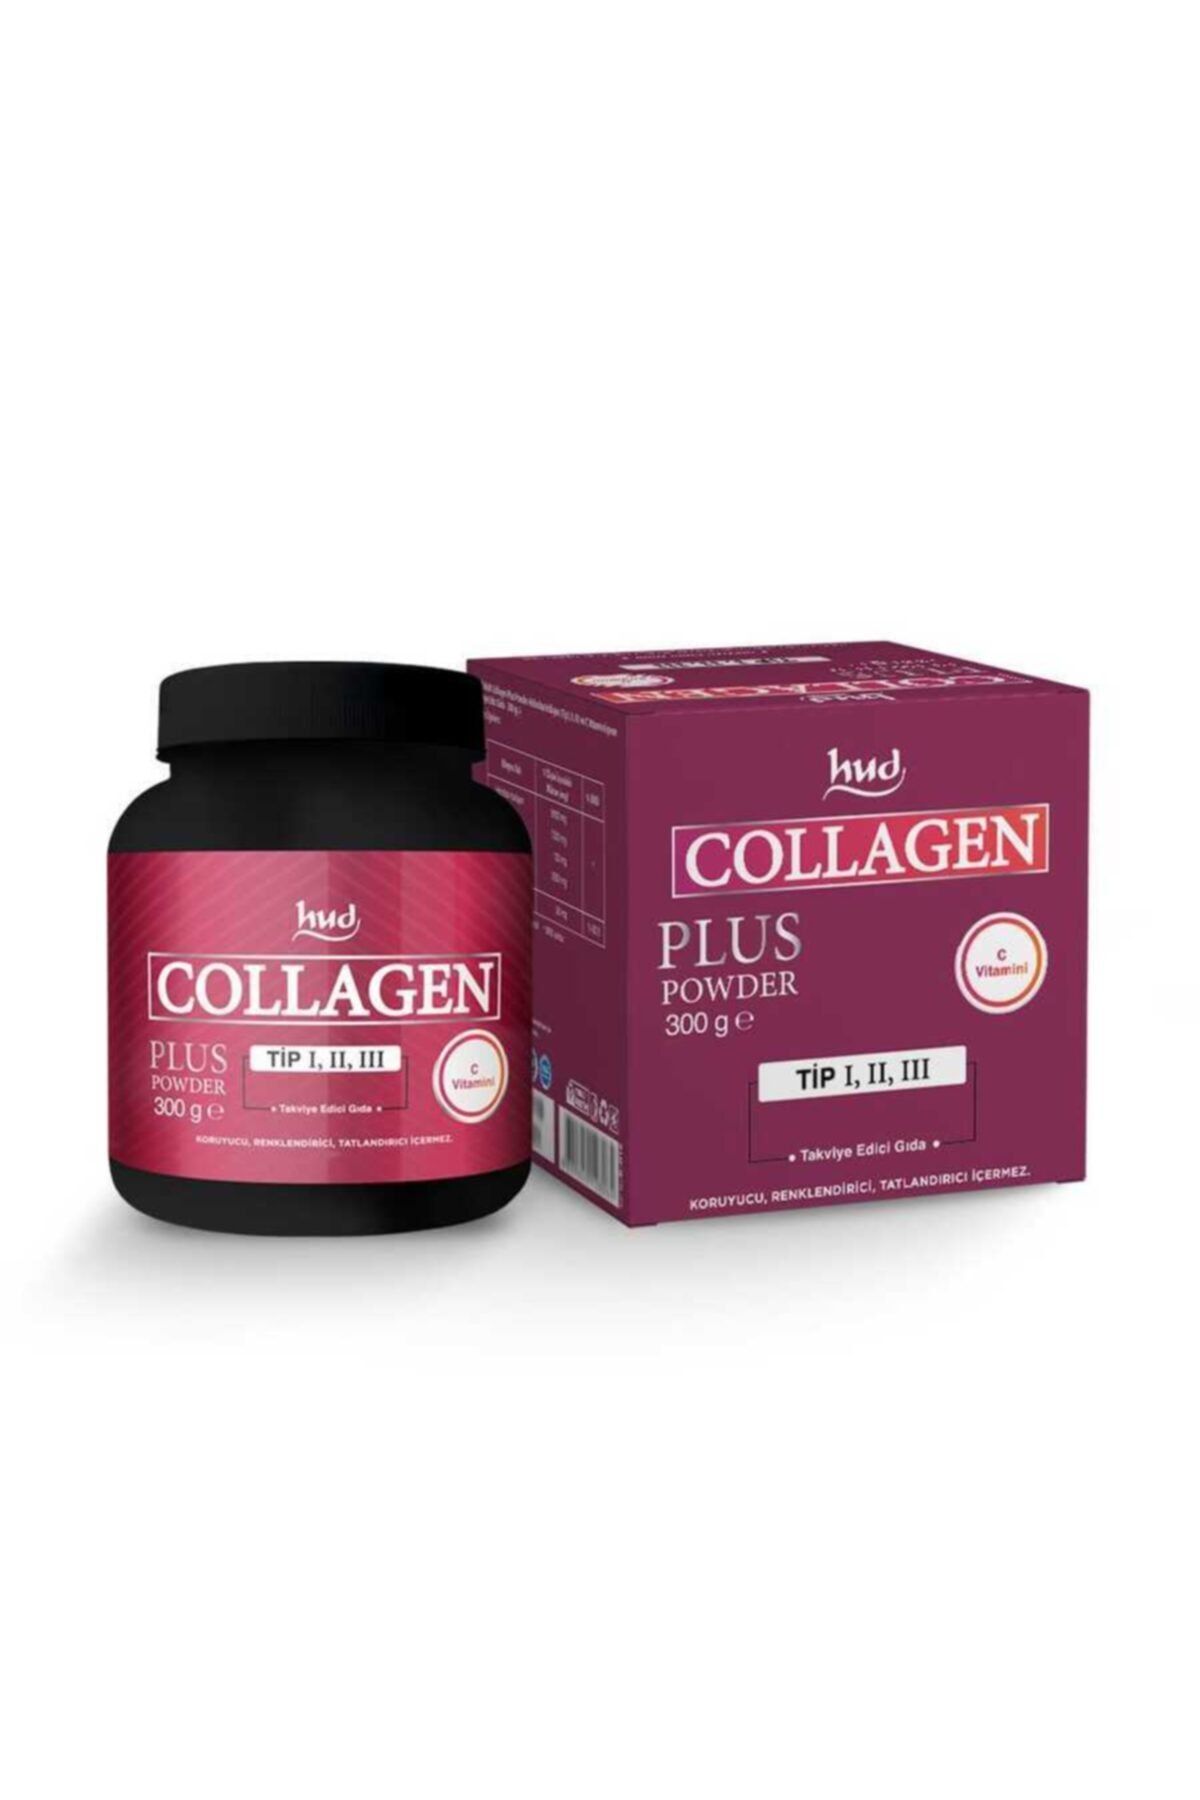 Hud Collagen Plus Powder 300 G - Toz Kolajen (30 Günlük Porsiyon)